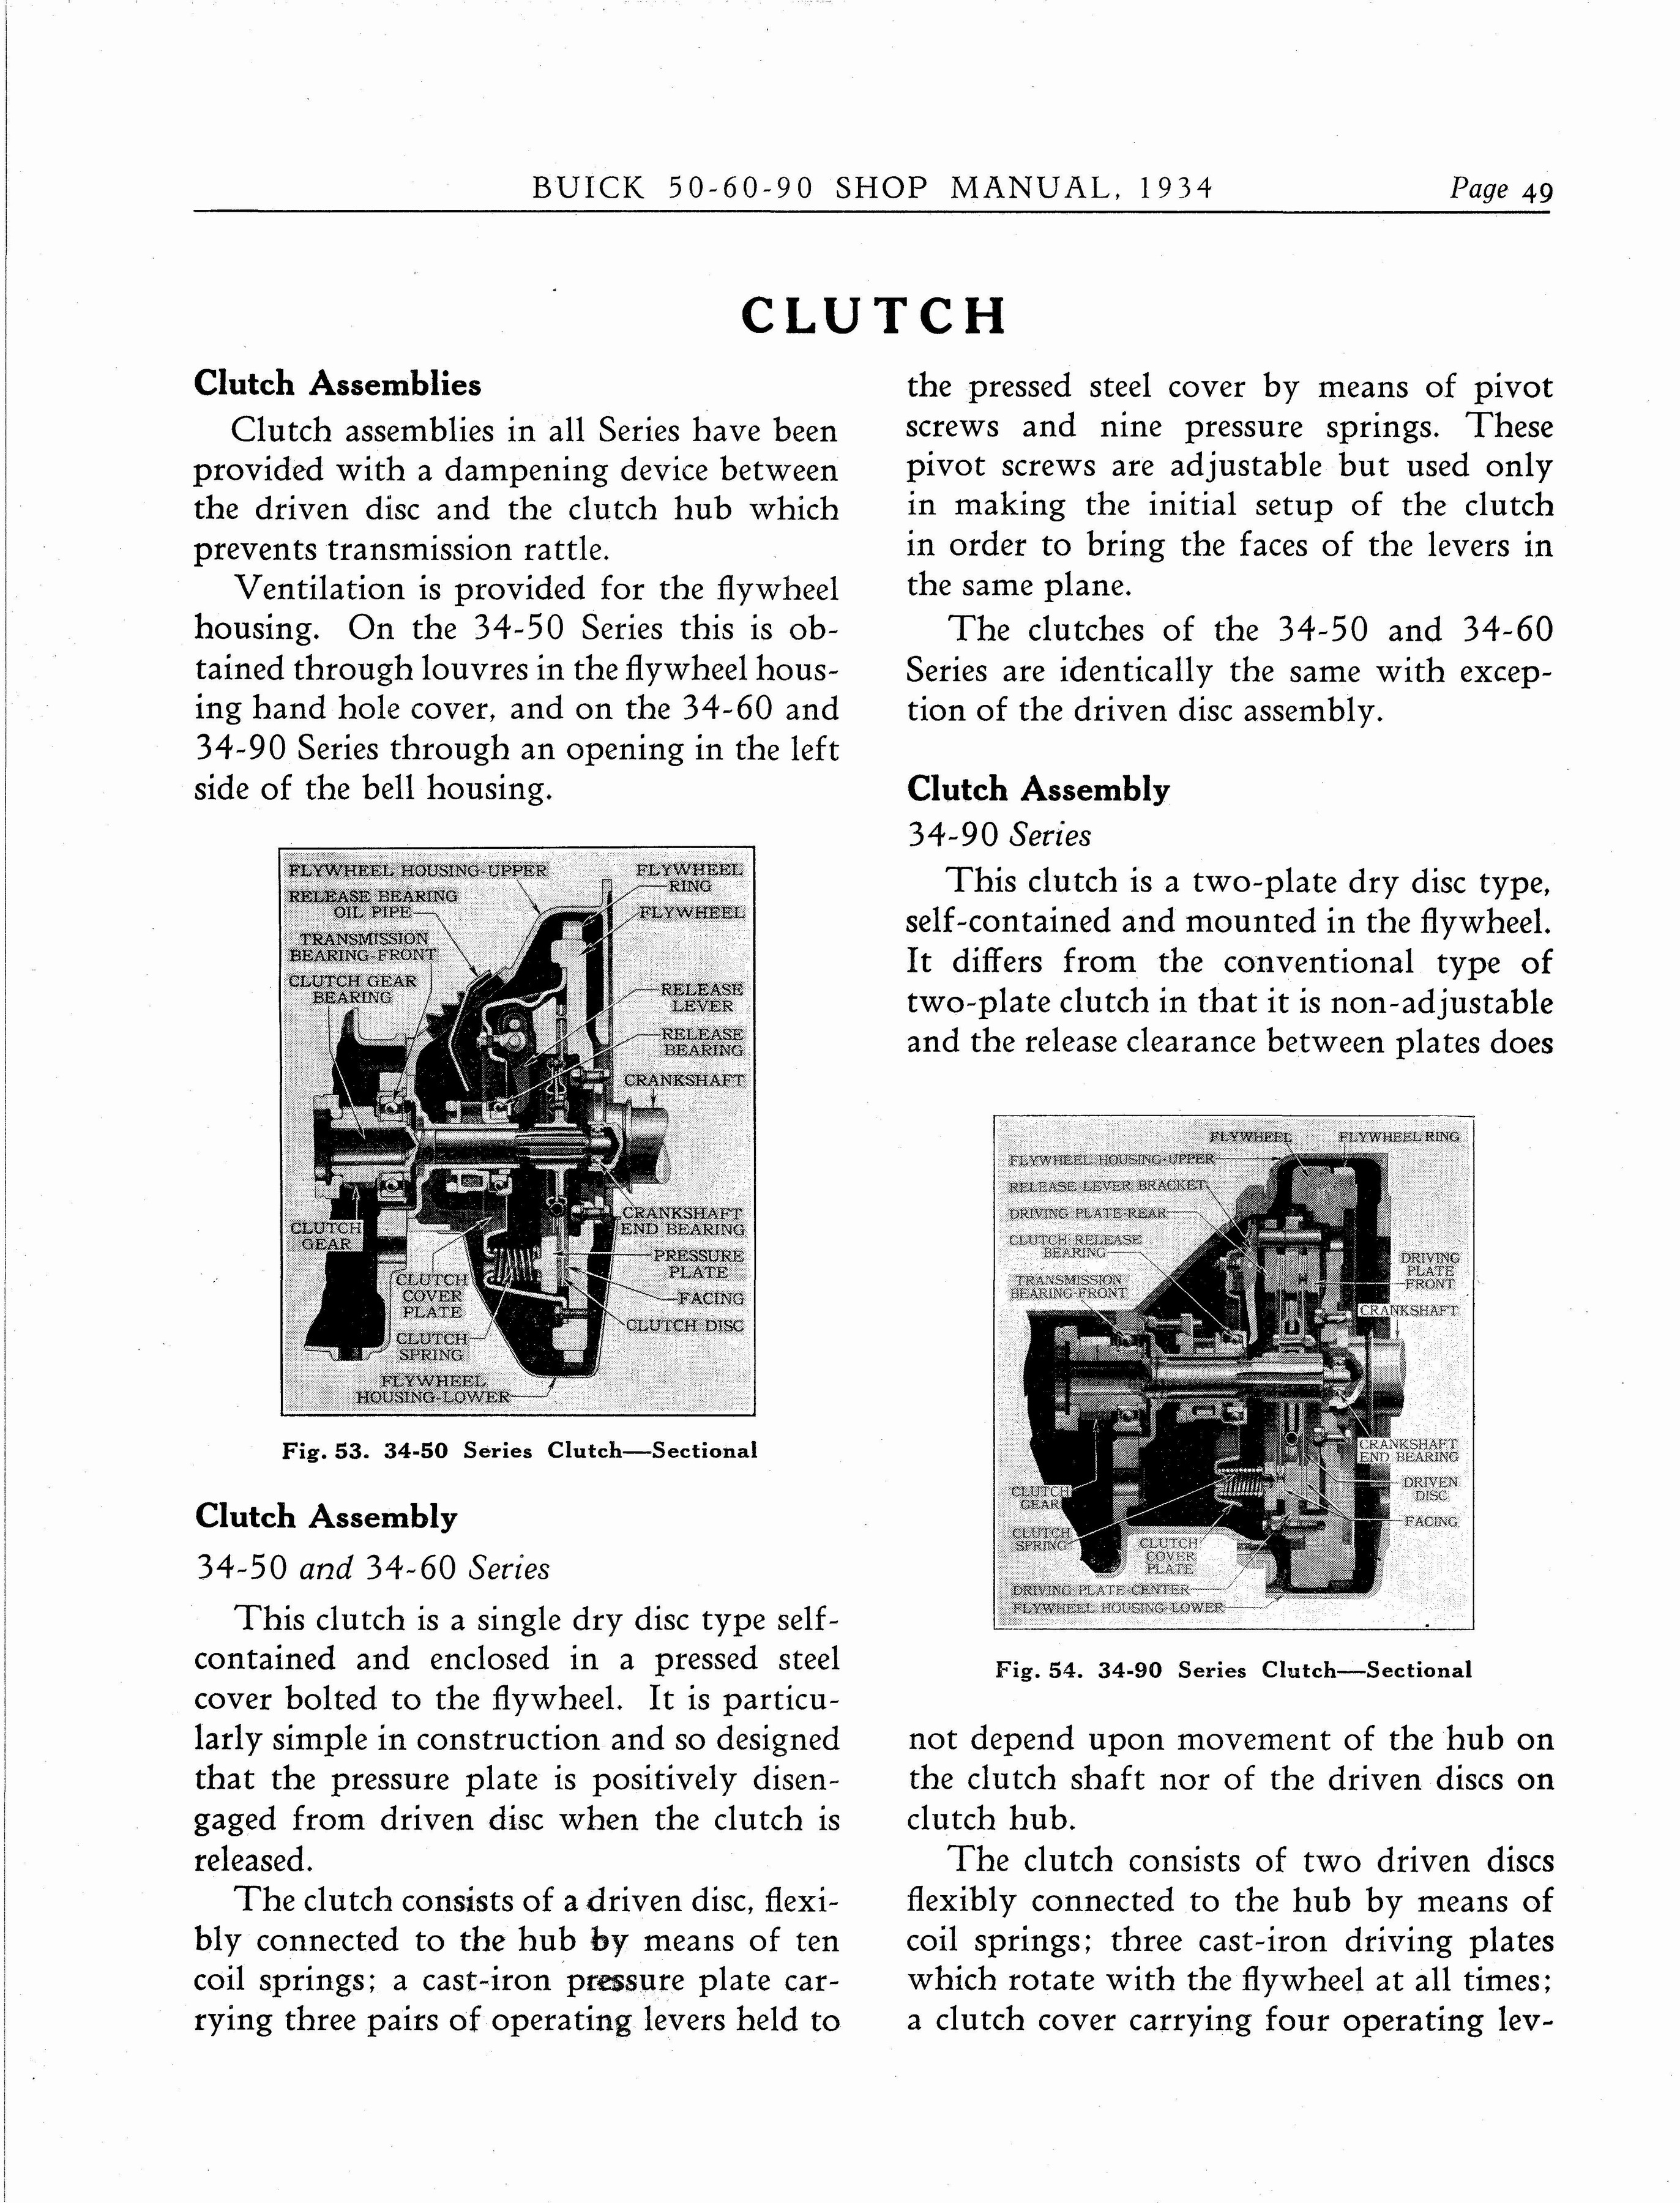 n_1934 Buick Series 50-60-90 Shop Manual_Page_050.jpg